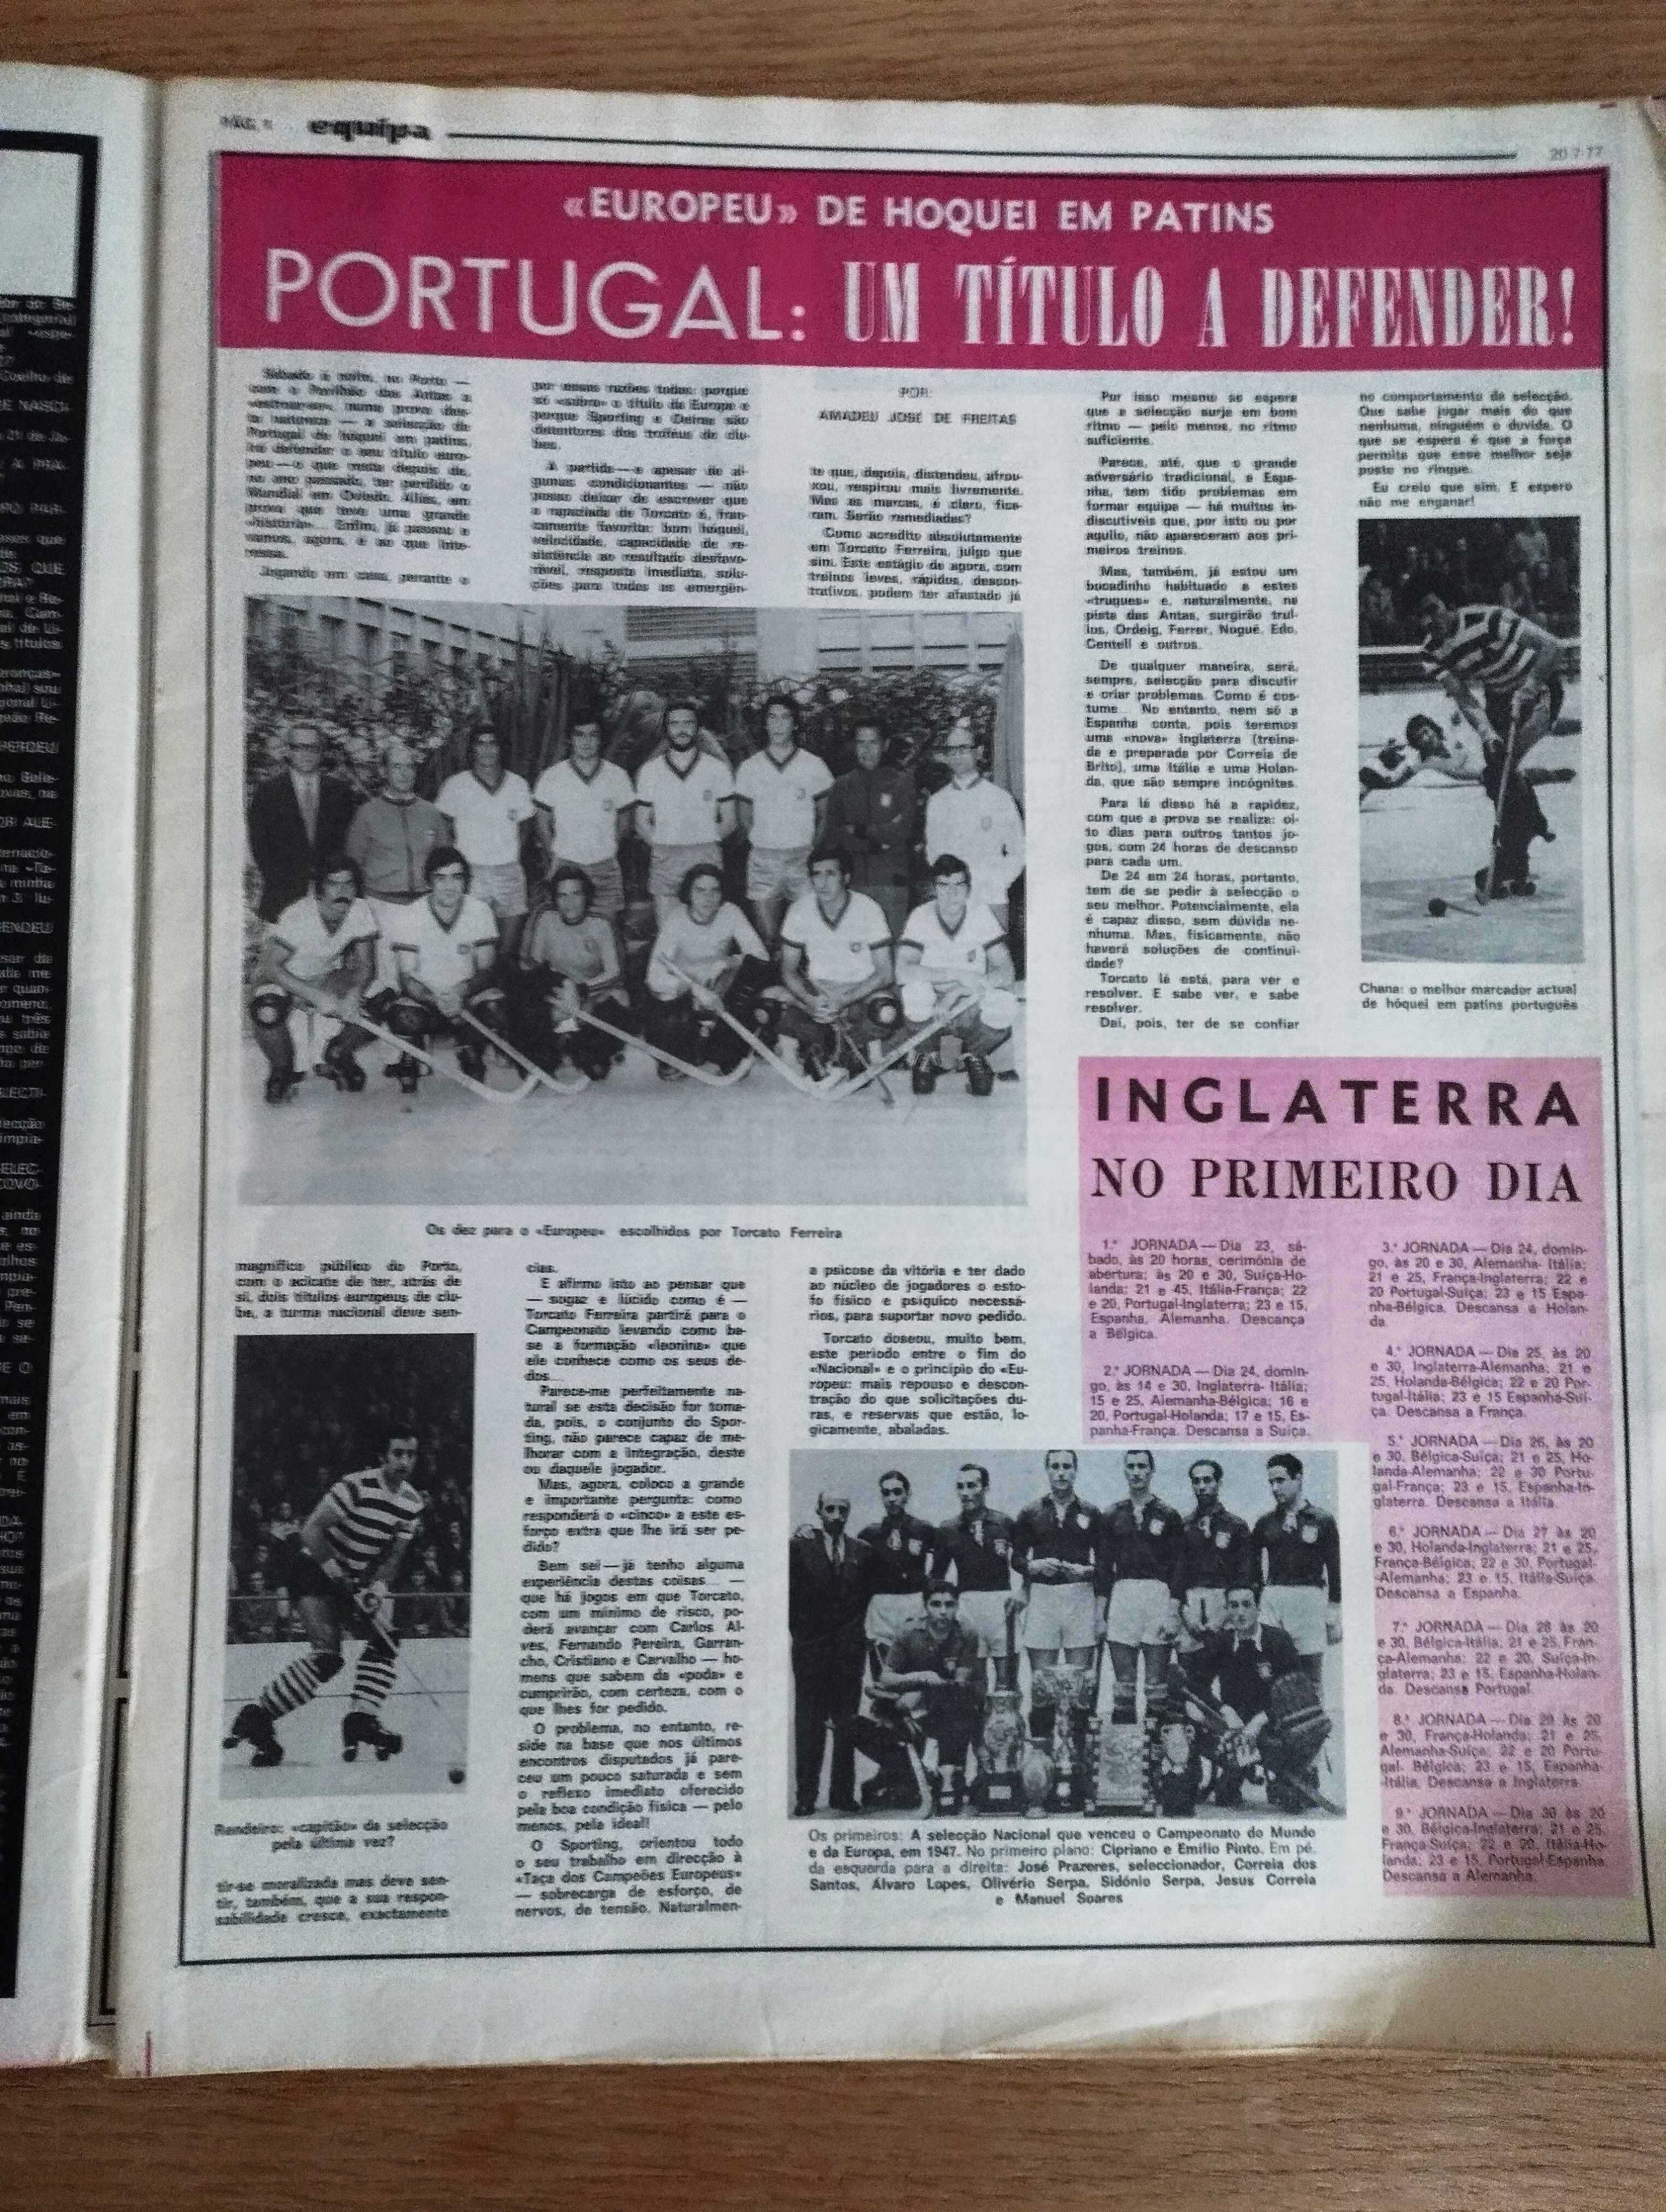 2 Revistas "Equipa" Sporting, Livramento, Beckenbauer